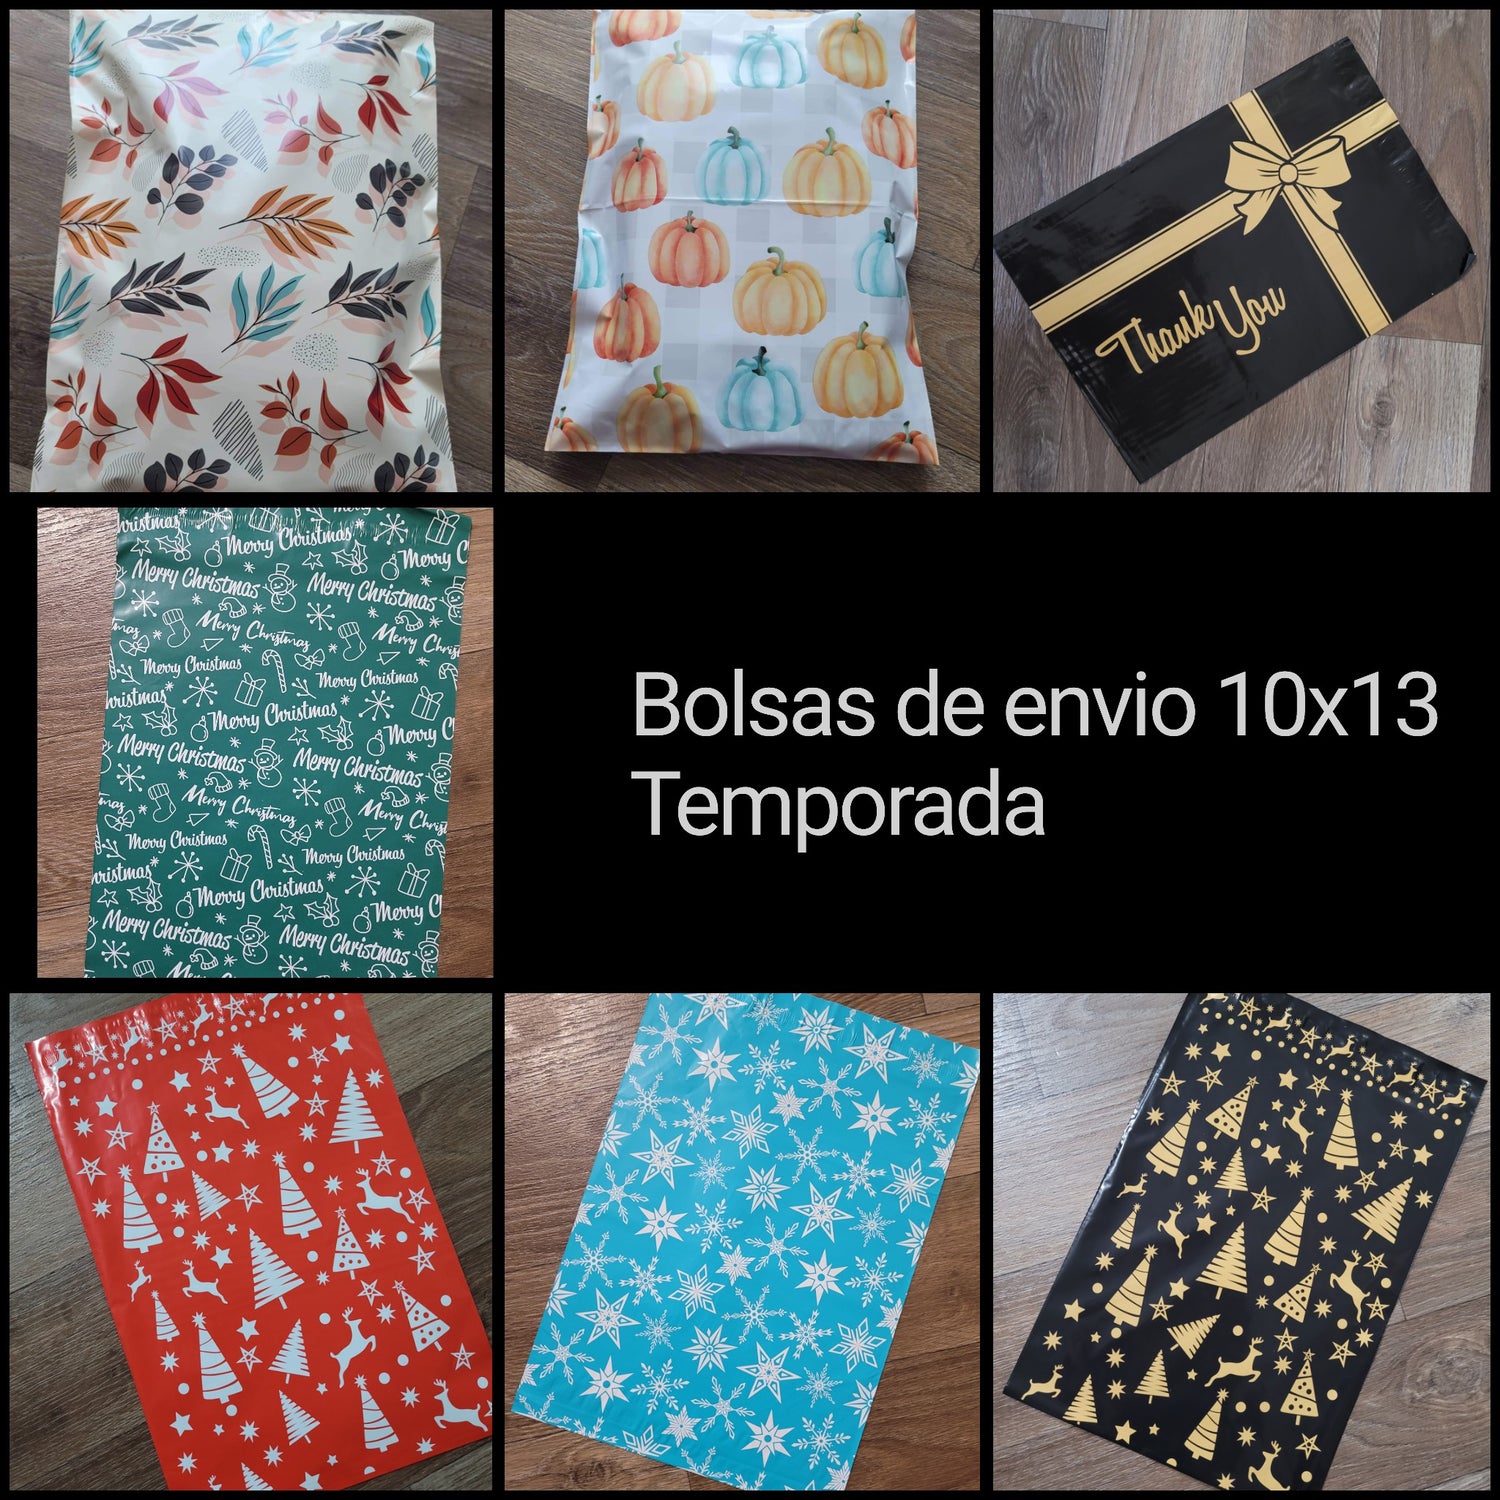 Escoge 4 Diseños Festivos de Bolsas de envío 10x13